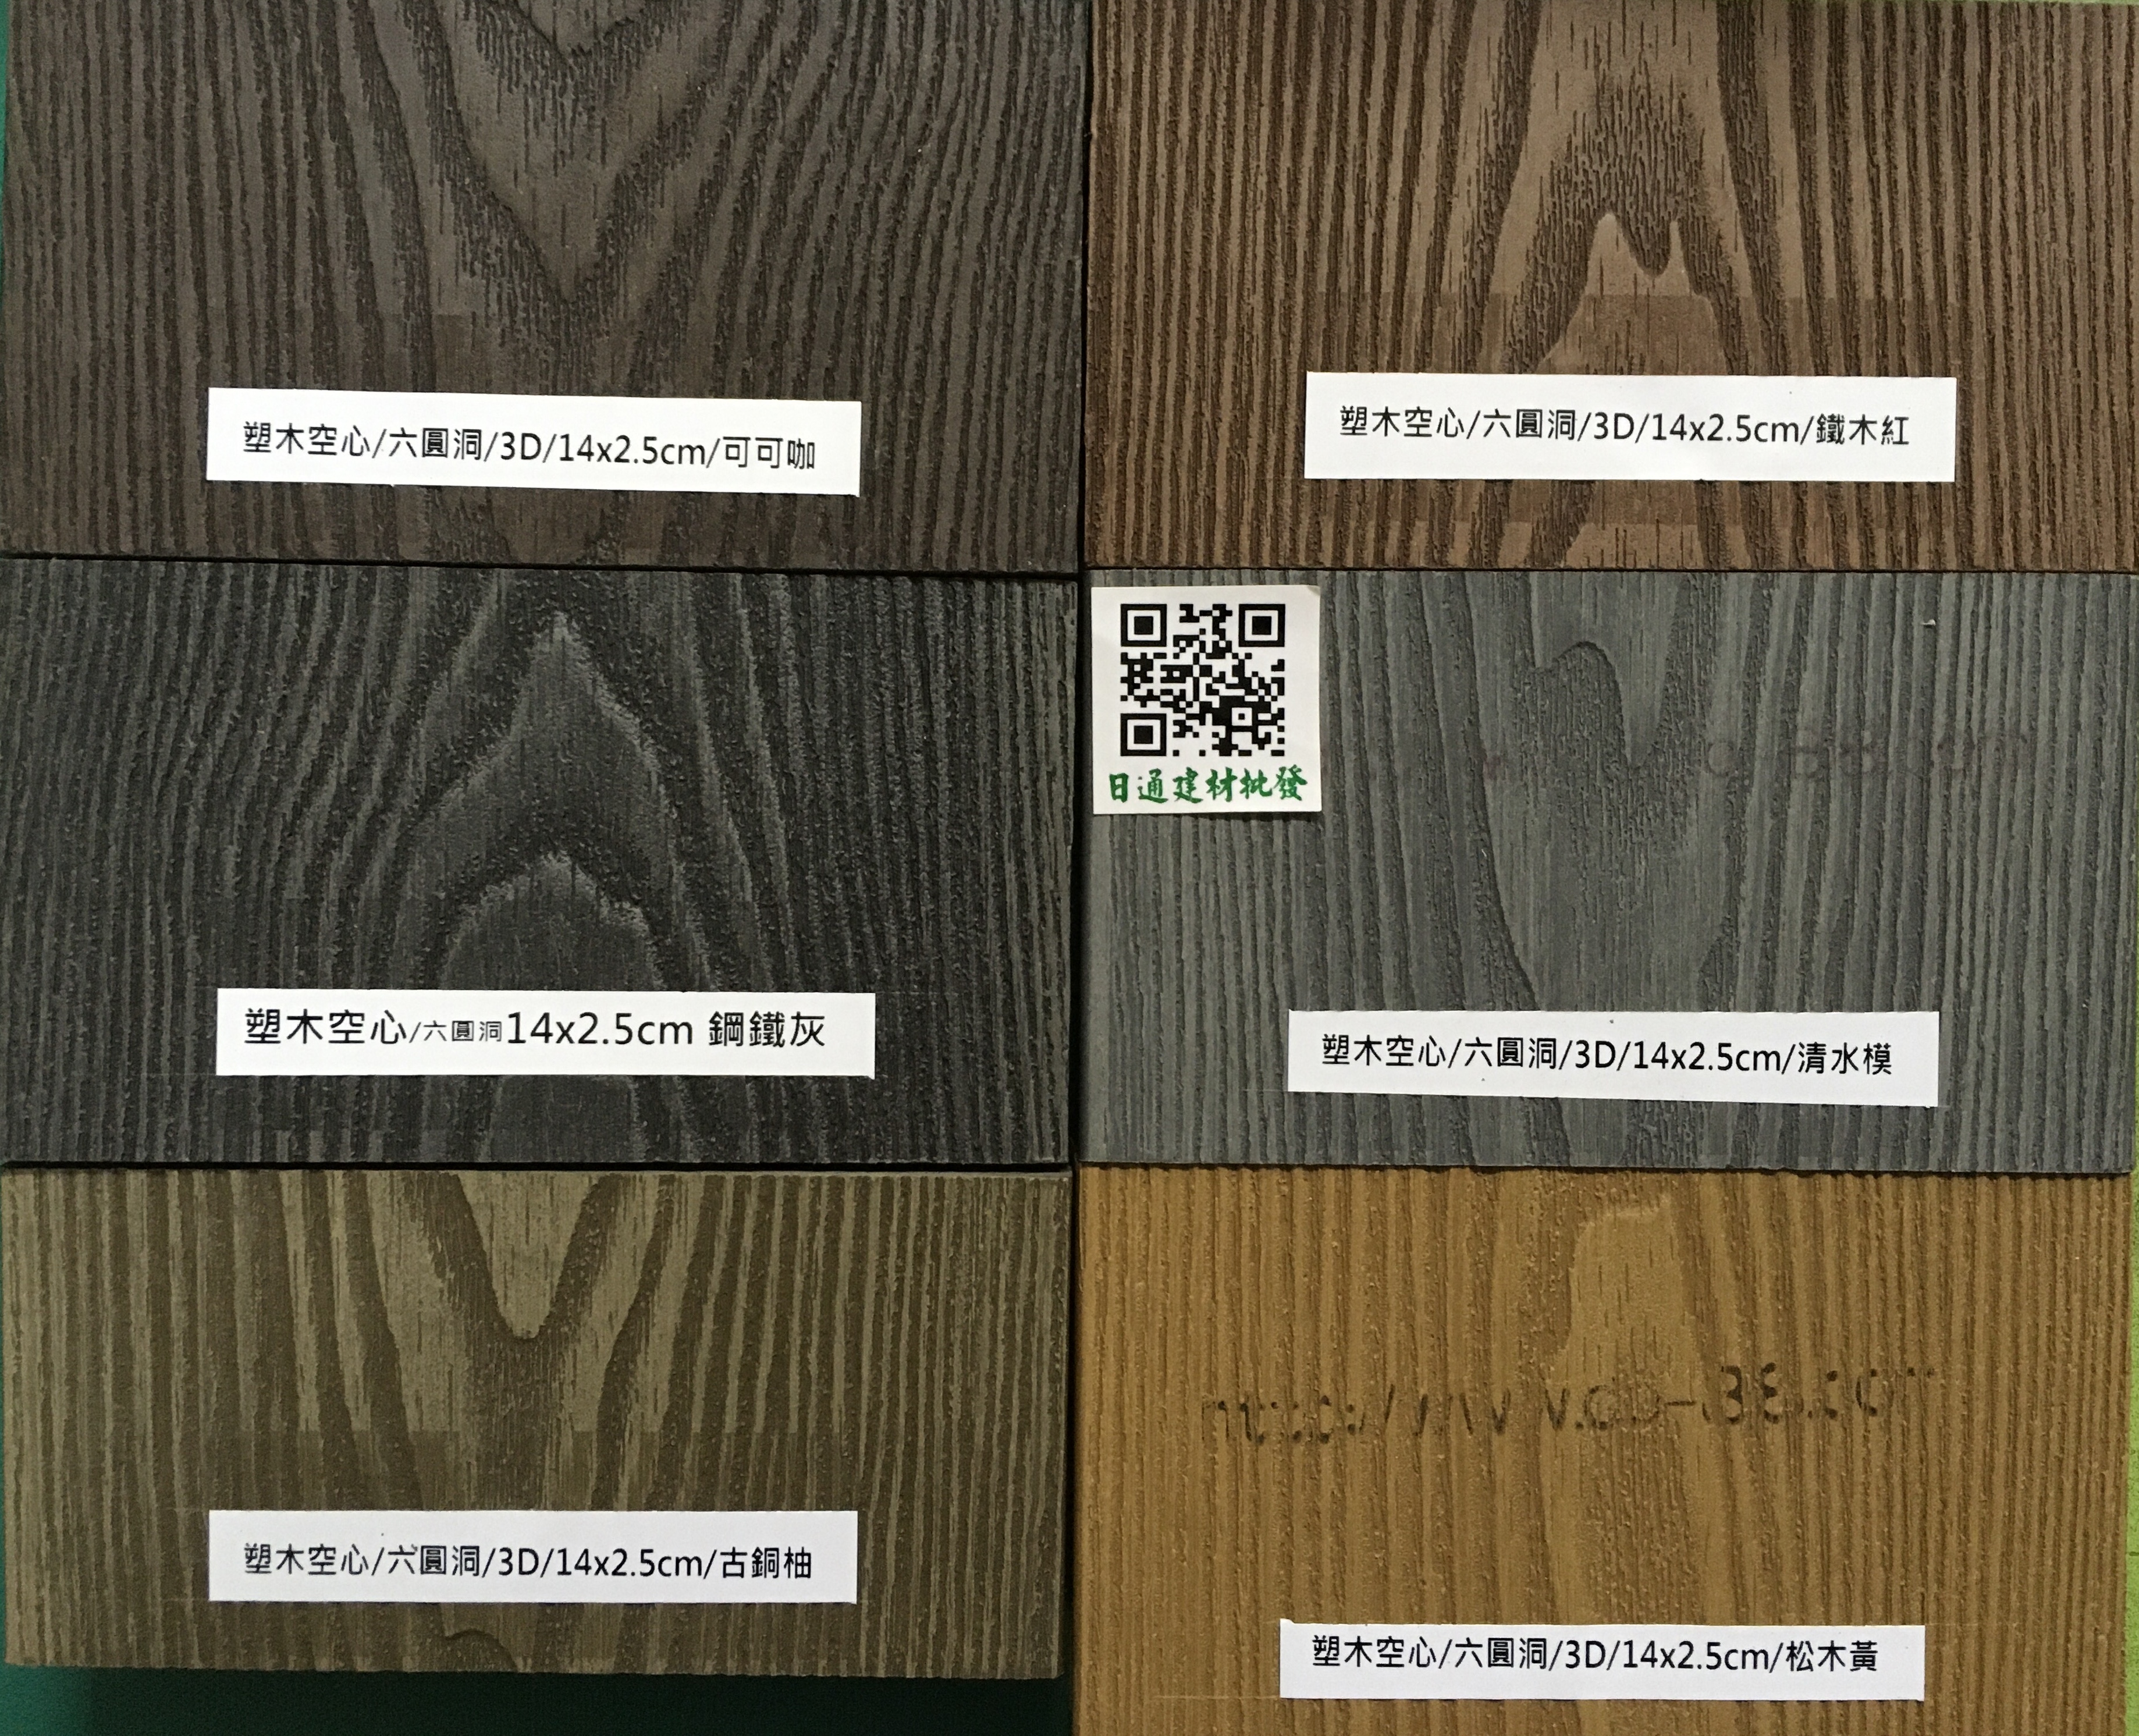 戶外地板塑木實心 8尺x 5cmx 3cm(以片計算)(咖啡*柚木*新柚木*藍灰*黑色)(定製品)